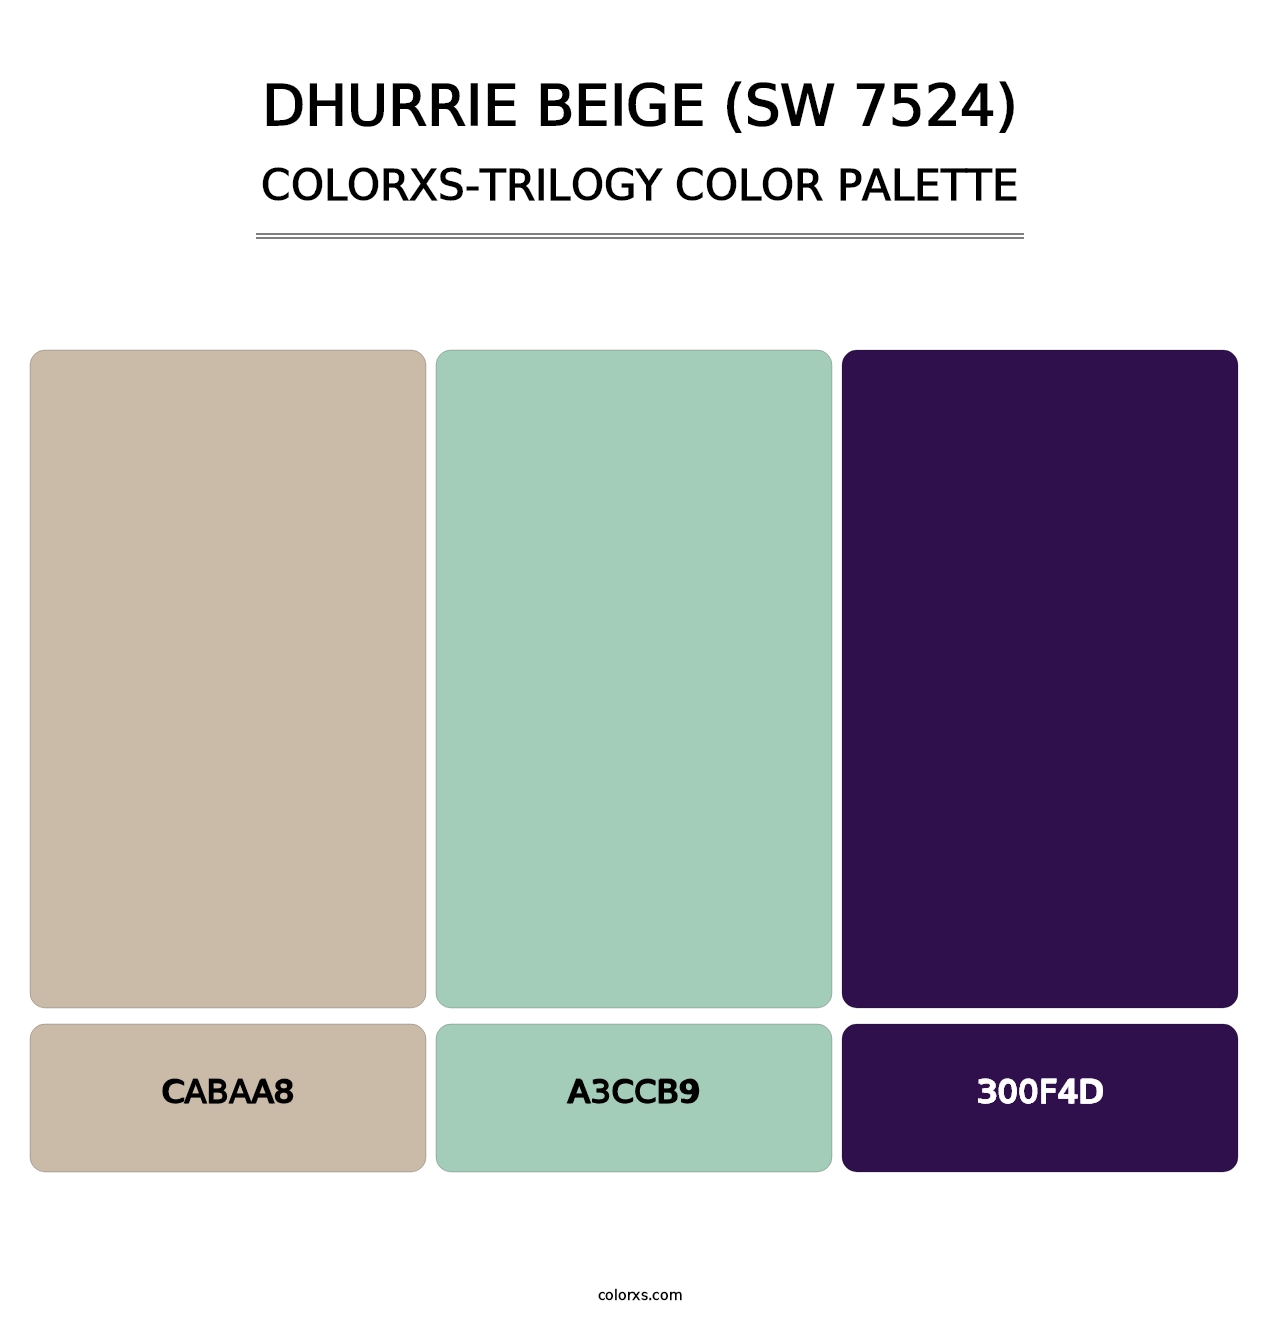 Dhurrie Beige (SW 7524) - Colorxs Trilogy Palette